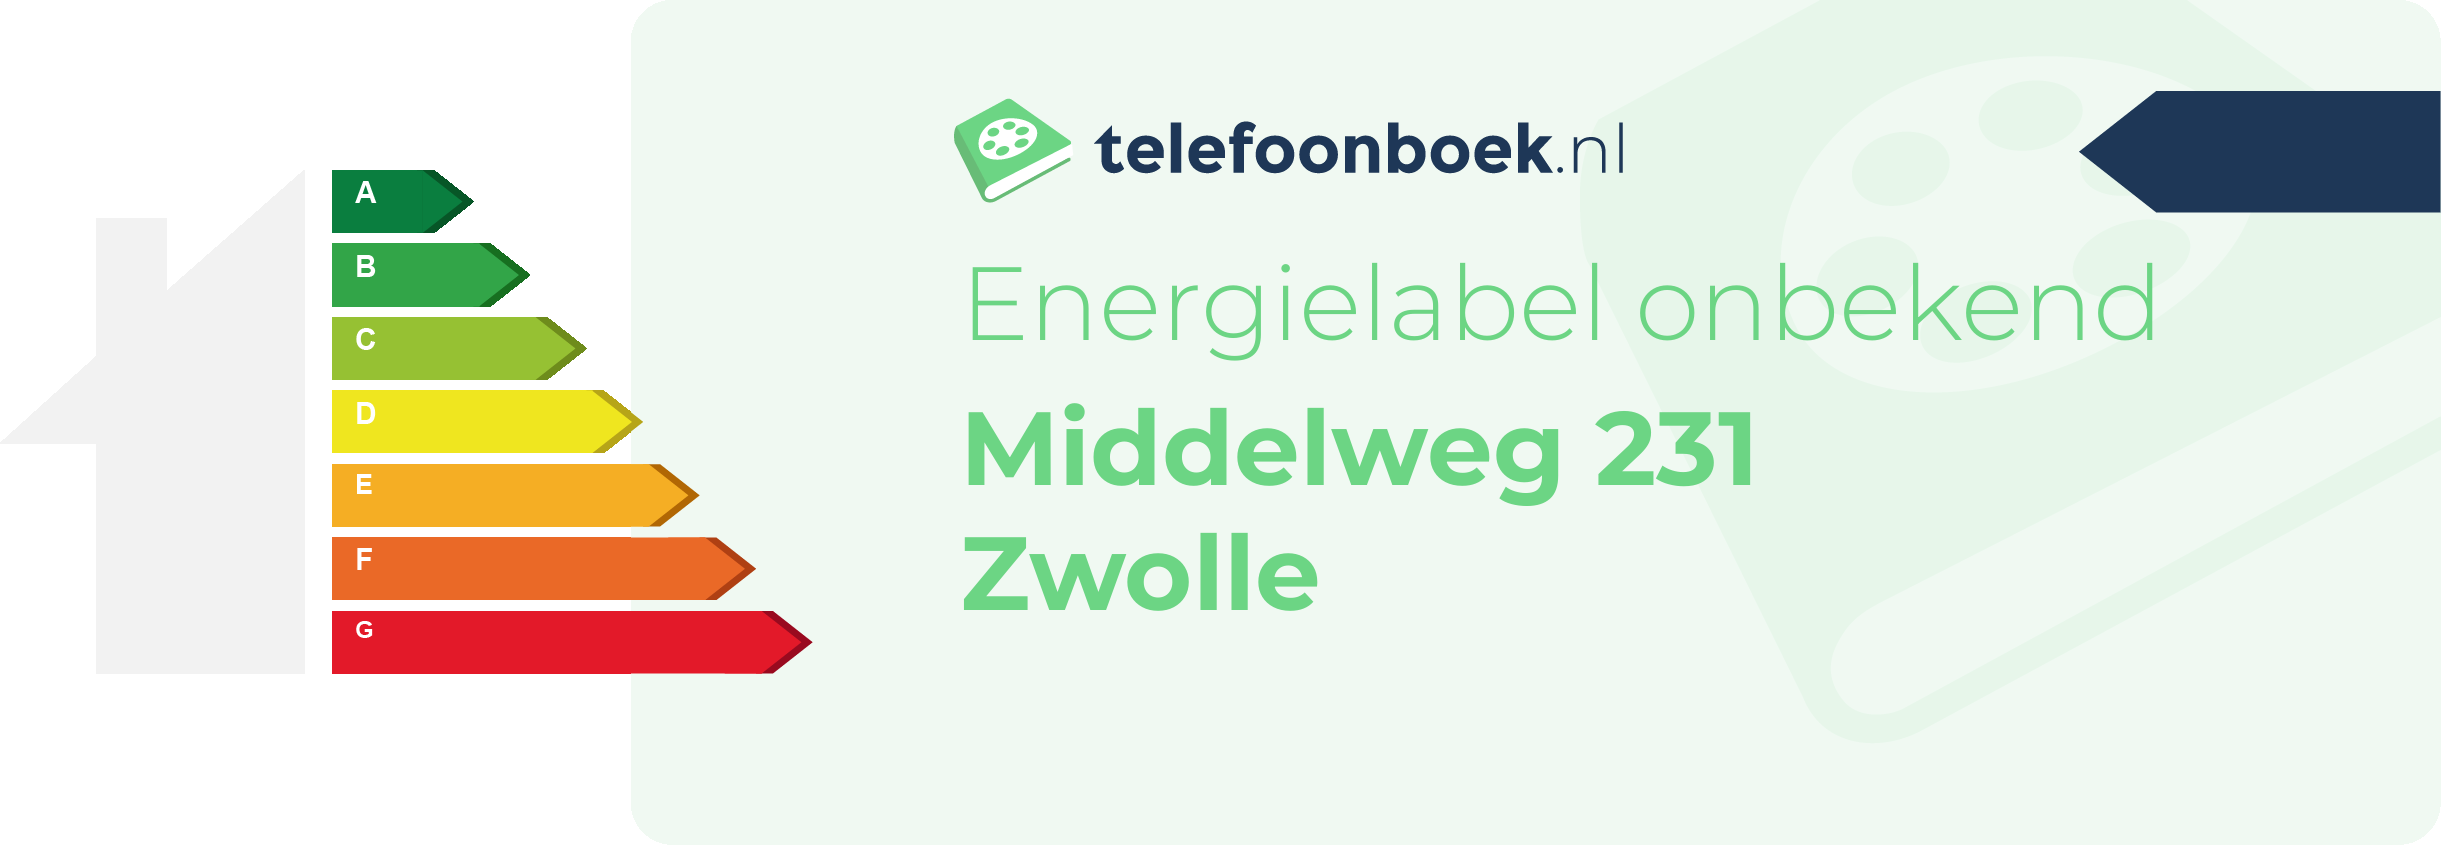 Energielabel Middelweg 231 Zwolle